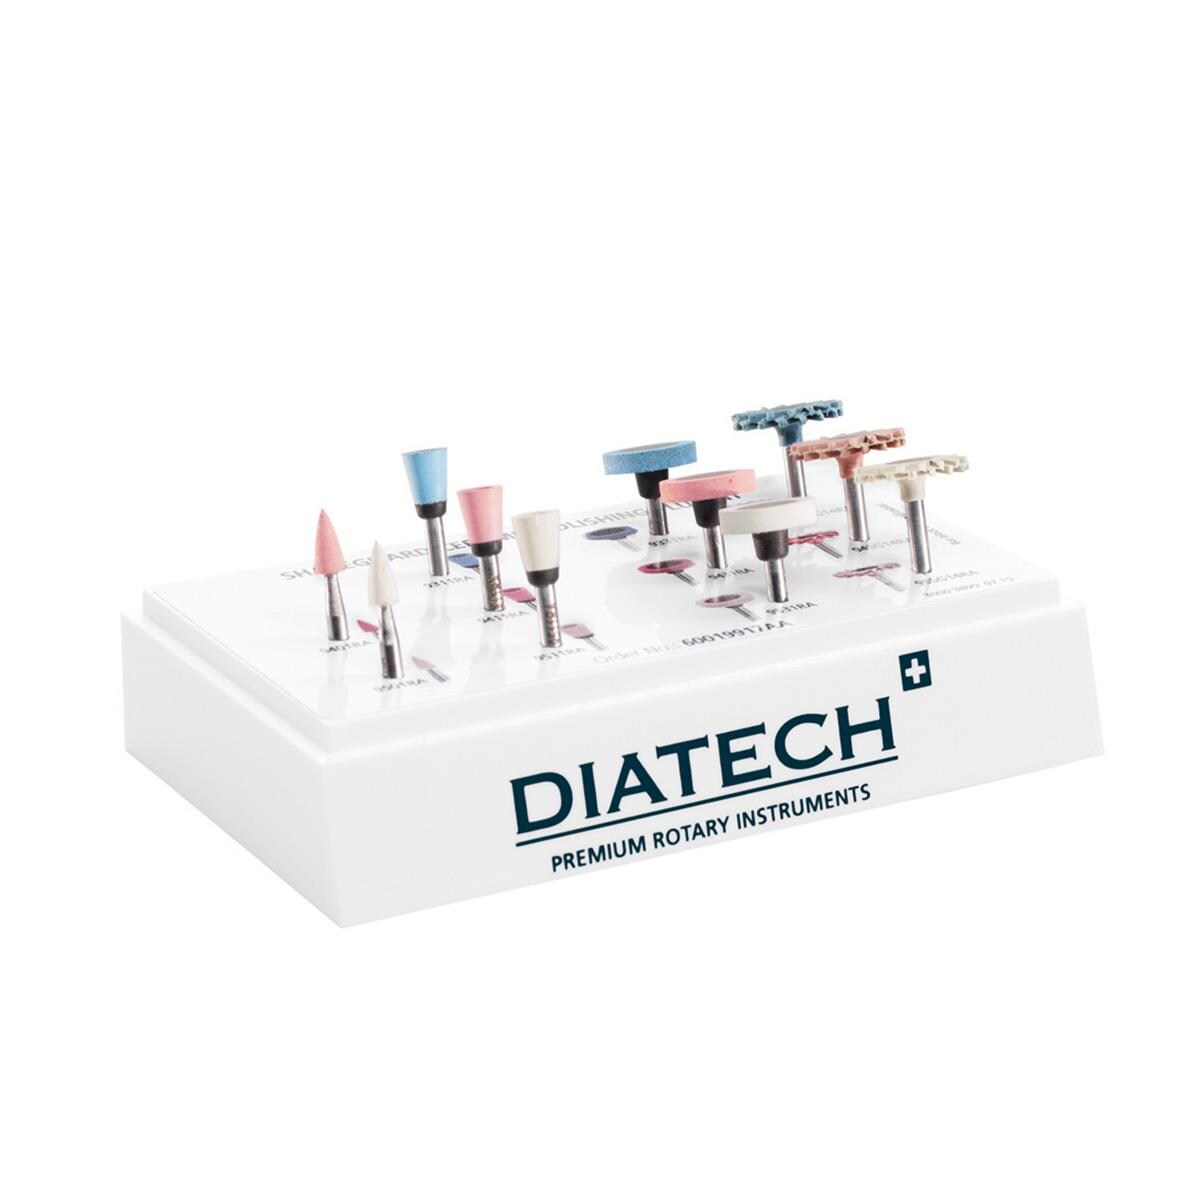 Diatech ShapeGuard Ceramic Polishing Plus Kit